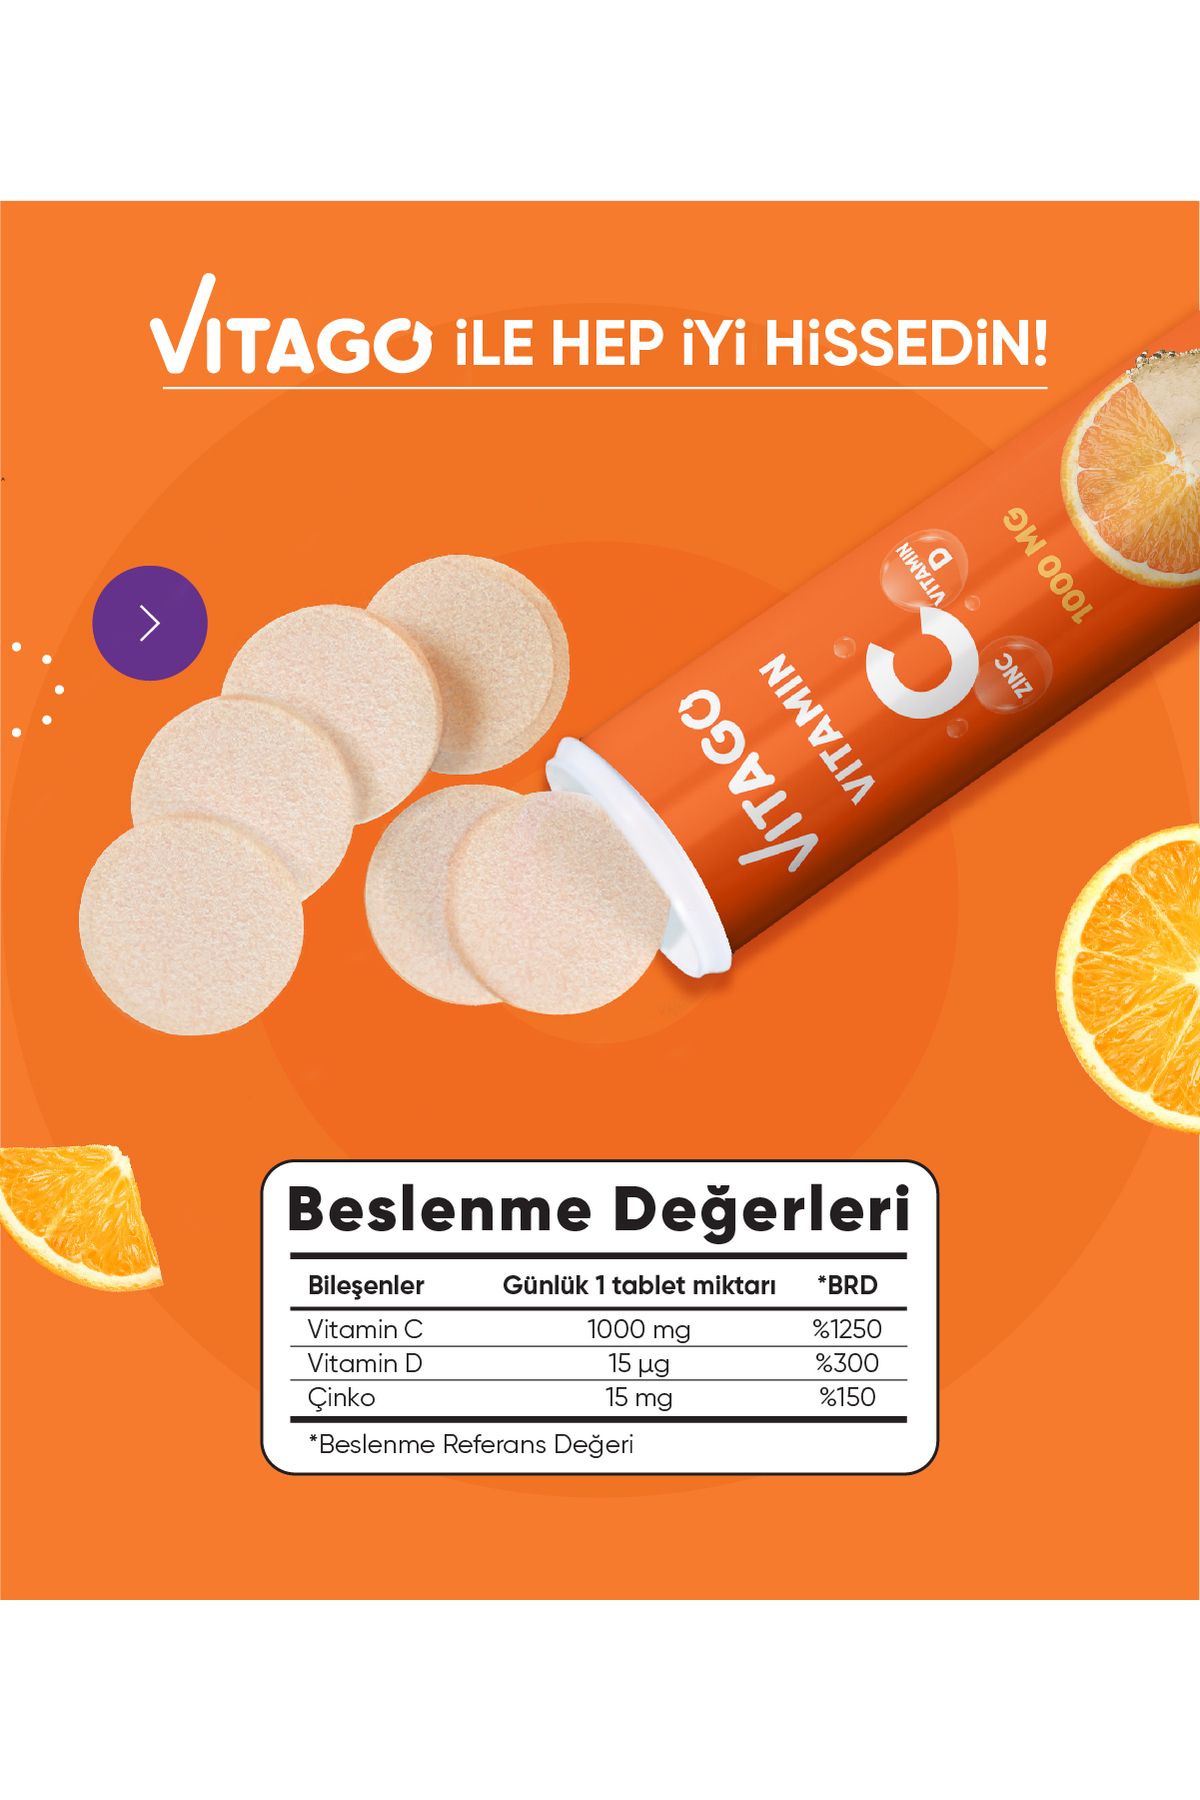 Vitago تبلت 20 عددی ویتامین C ویتامین D روی زینک